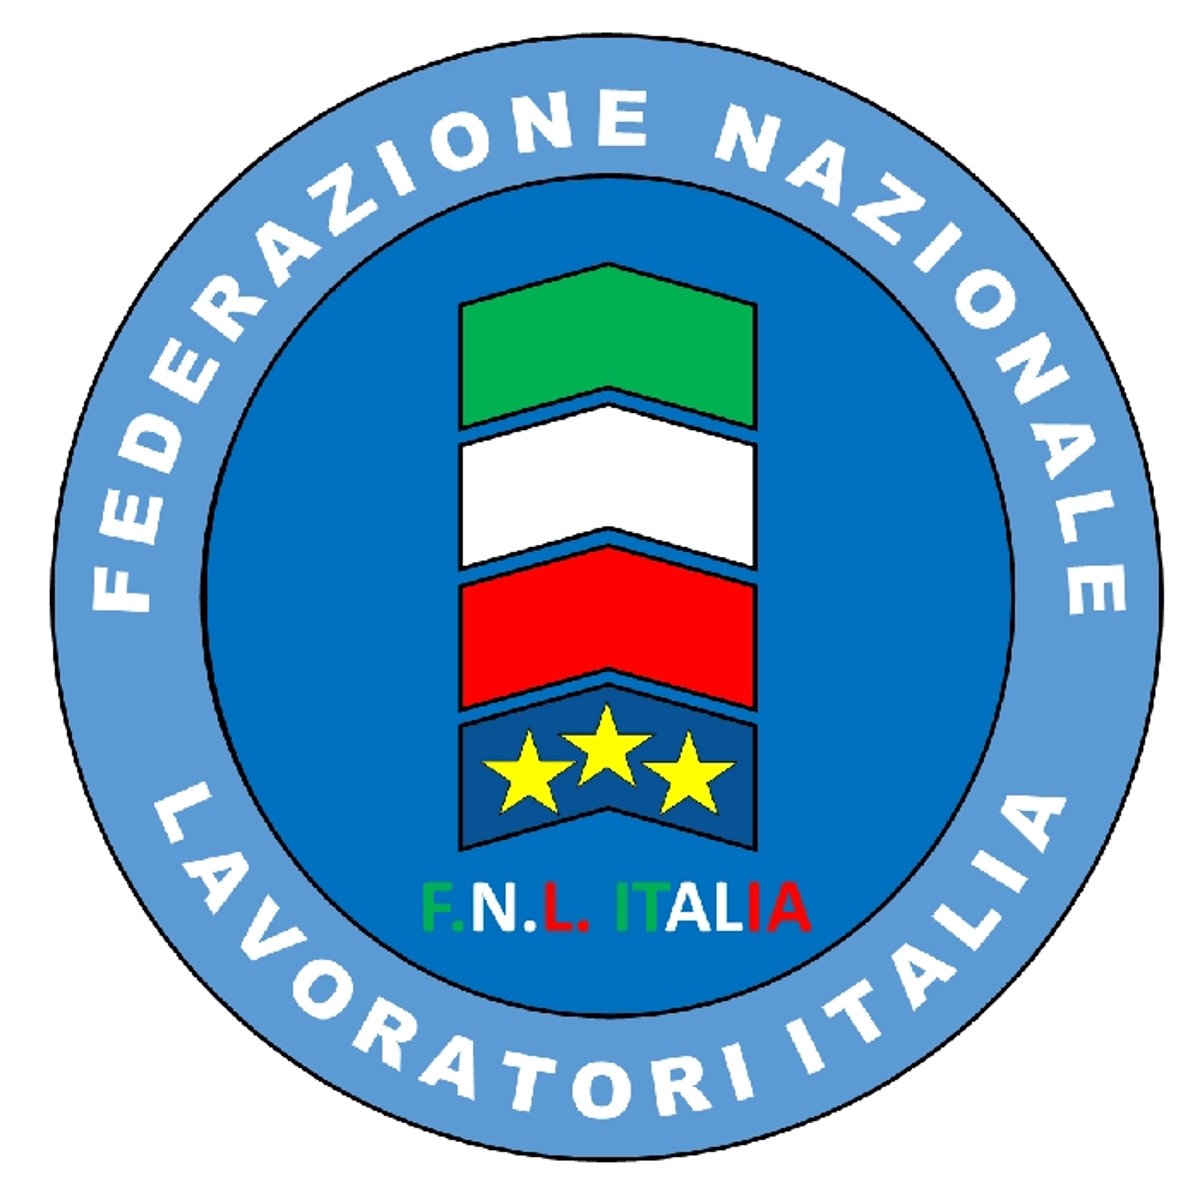 FE.NA.L.I. - FNL ITALIA: 1 Maggio Festa dei Lavoratori. Priorità, il Benessere dei Lavoratori